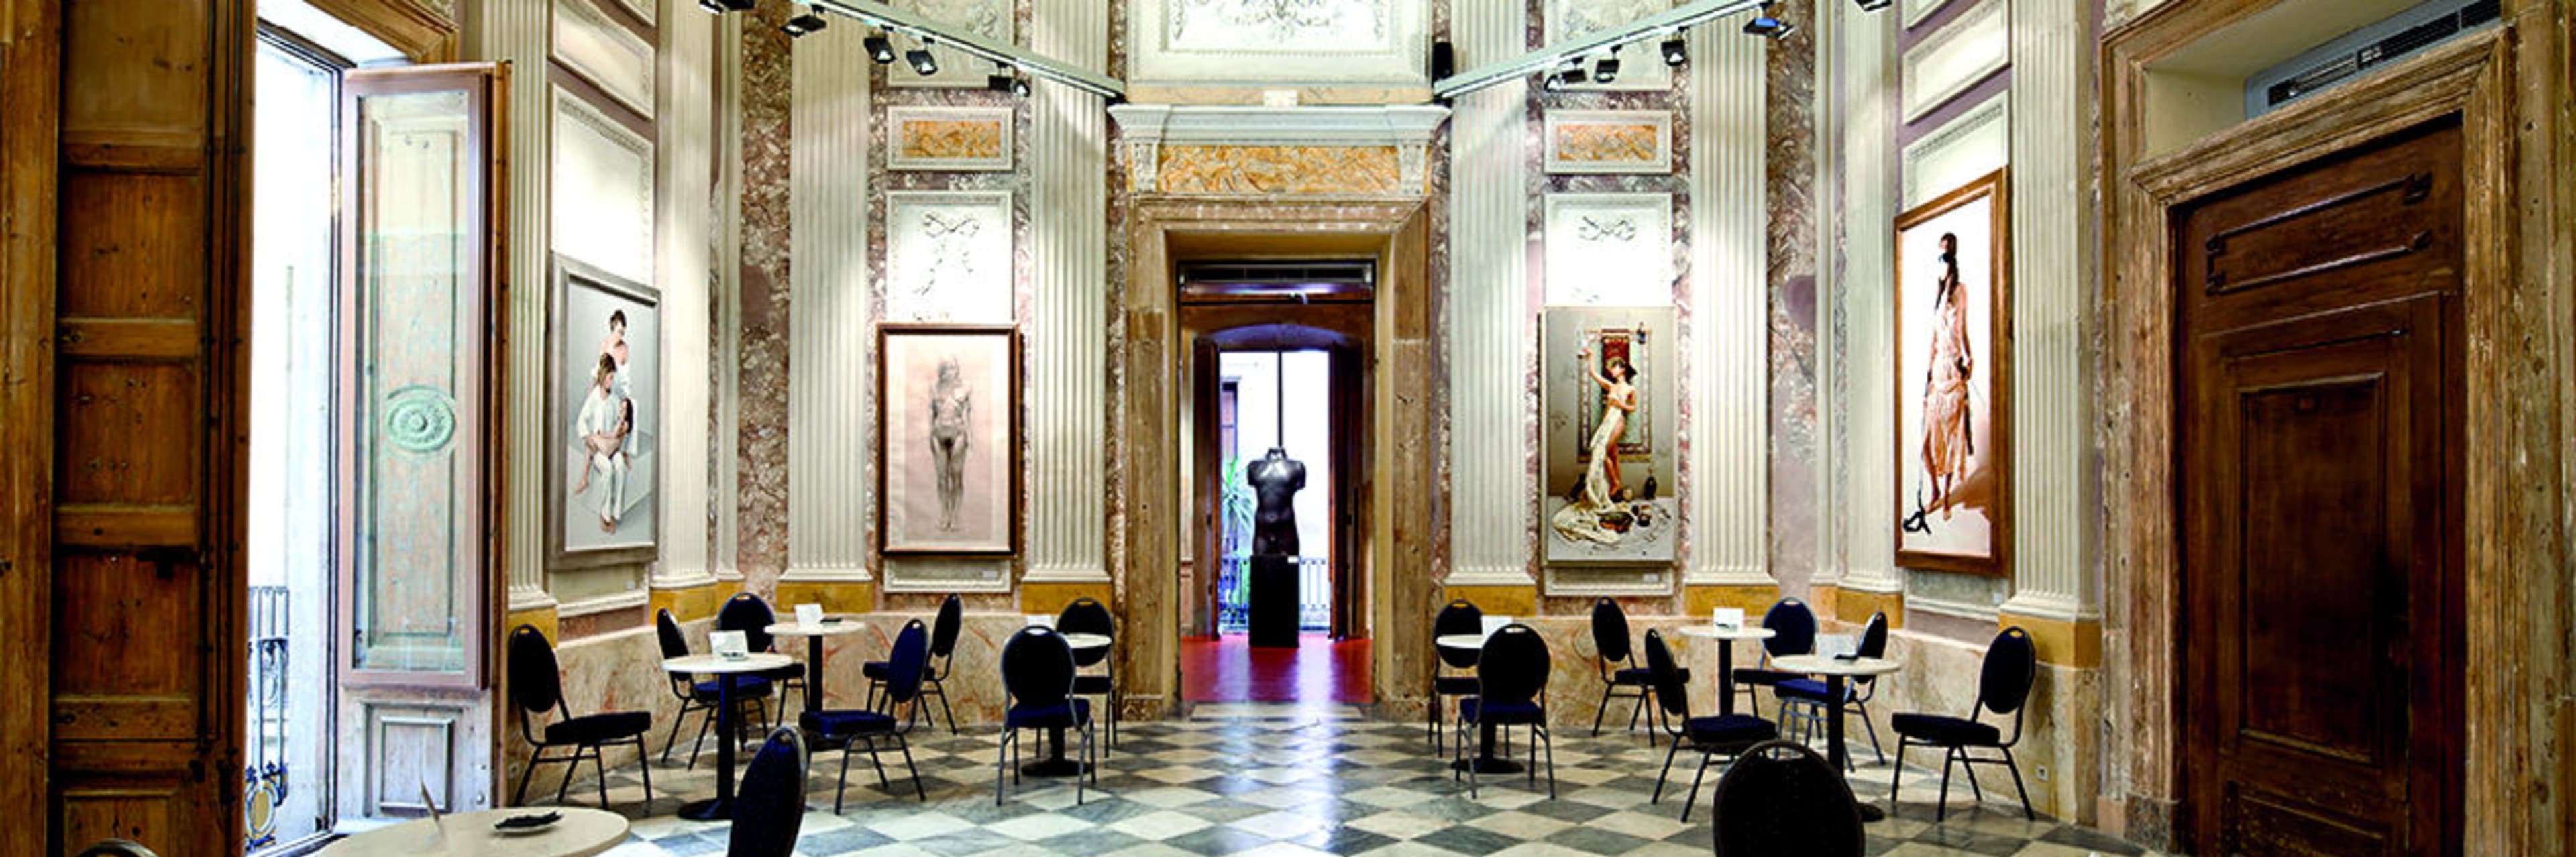 MEAM - Museu Europeu d'Art Modern